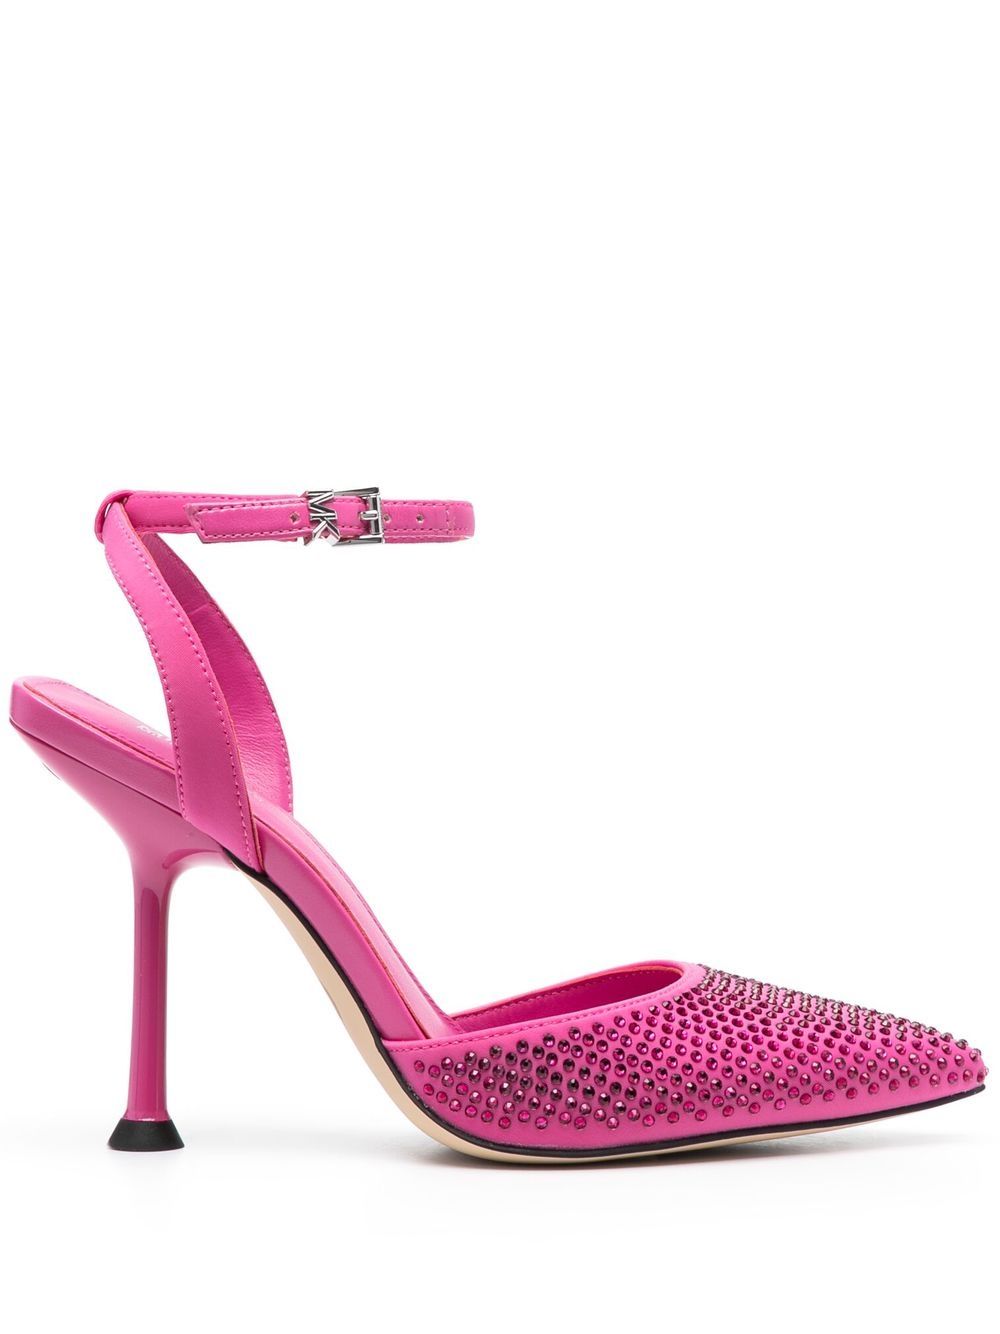 Michael Kors crystal-embellished pointed-toe sandals - Pink von Michael Kors